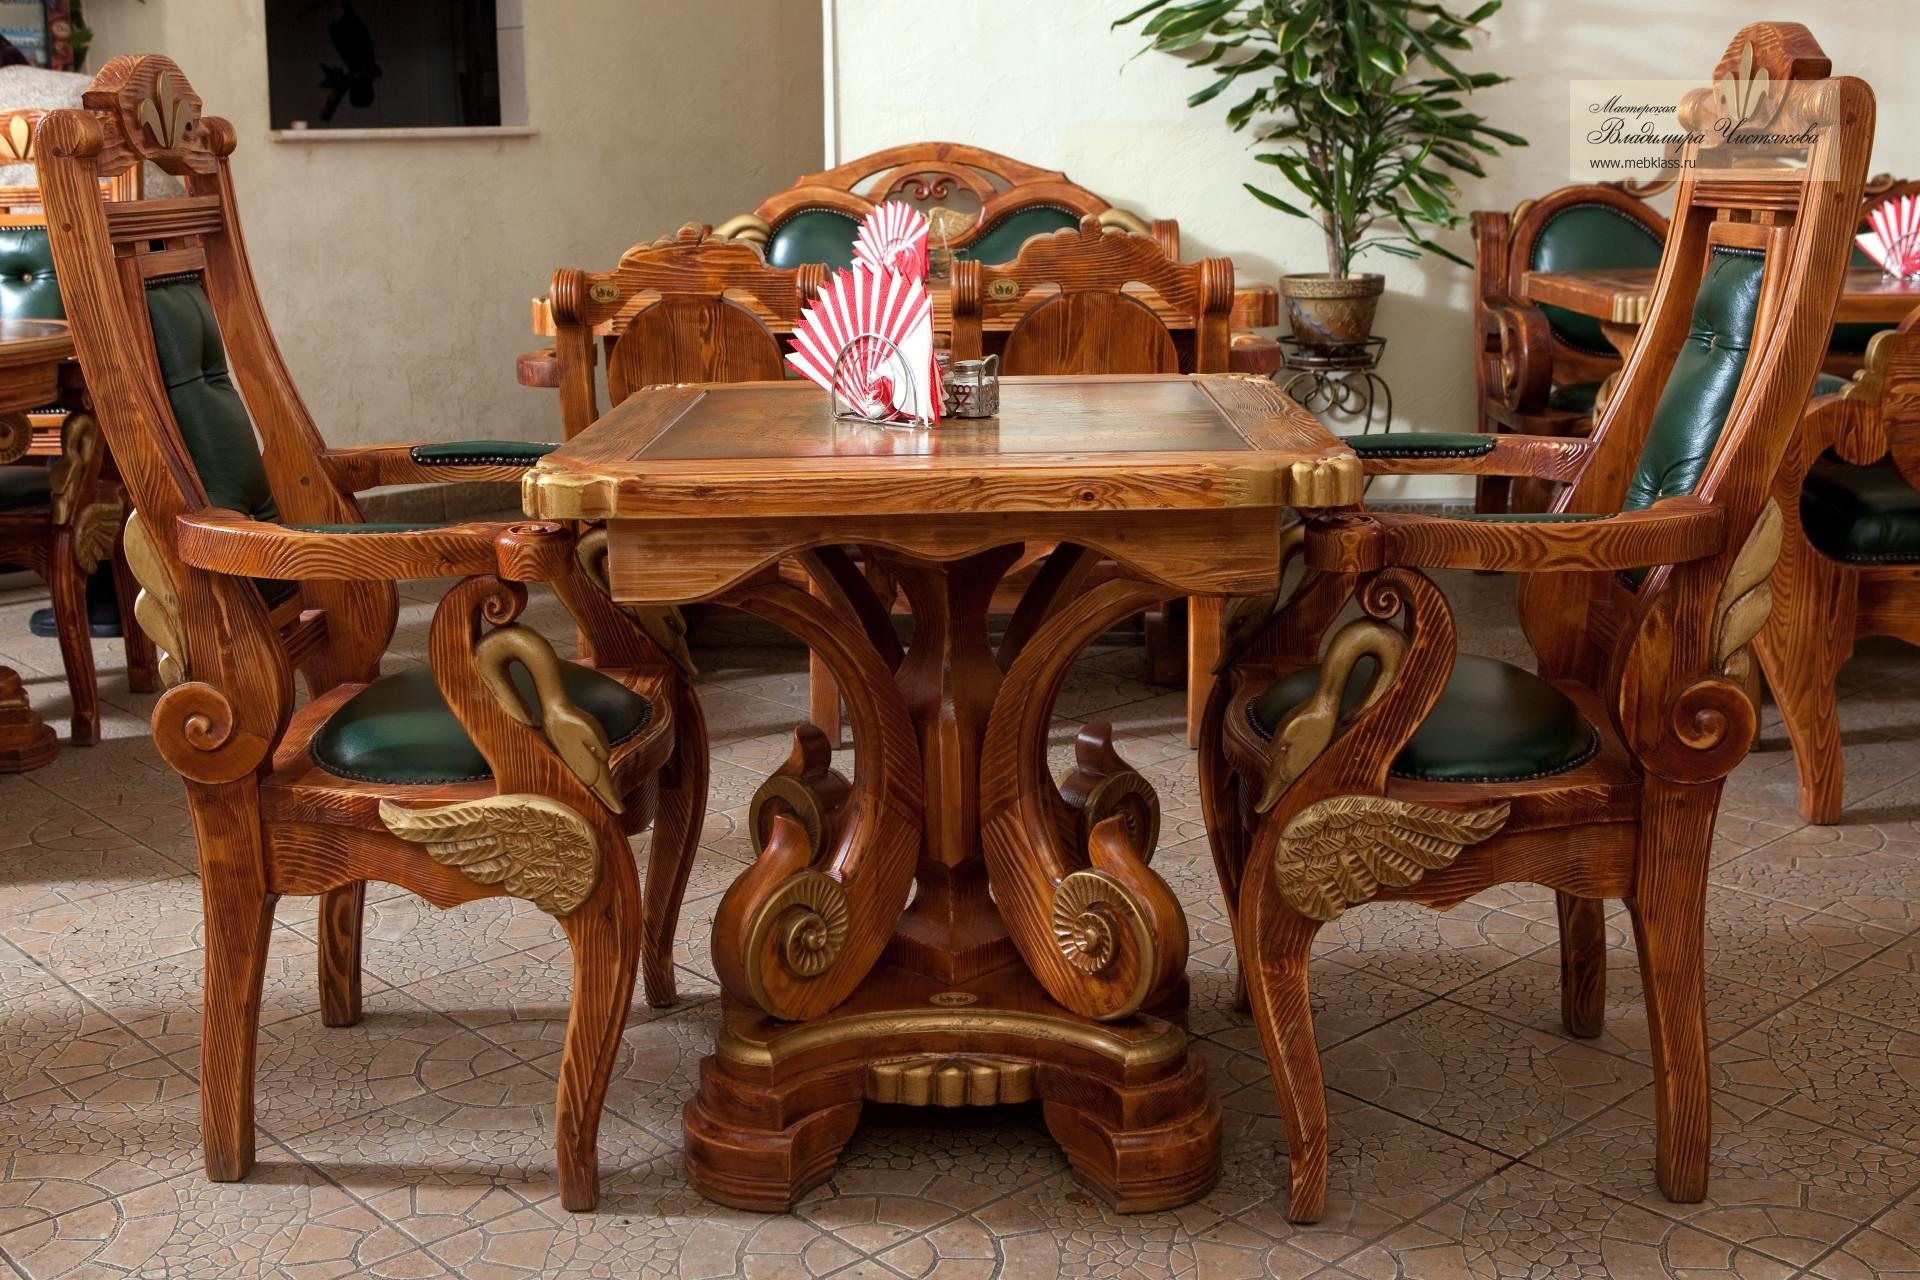 Wooden мебель. Красивая деревянная мебель. Резная деревянная мебель. Красивая резная мебель. Красивые столы из дерева.